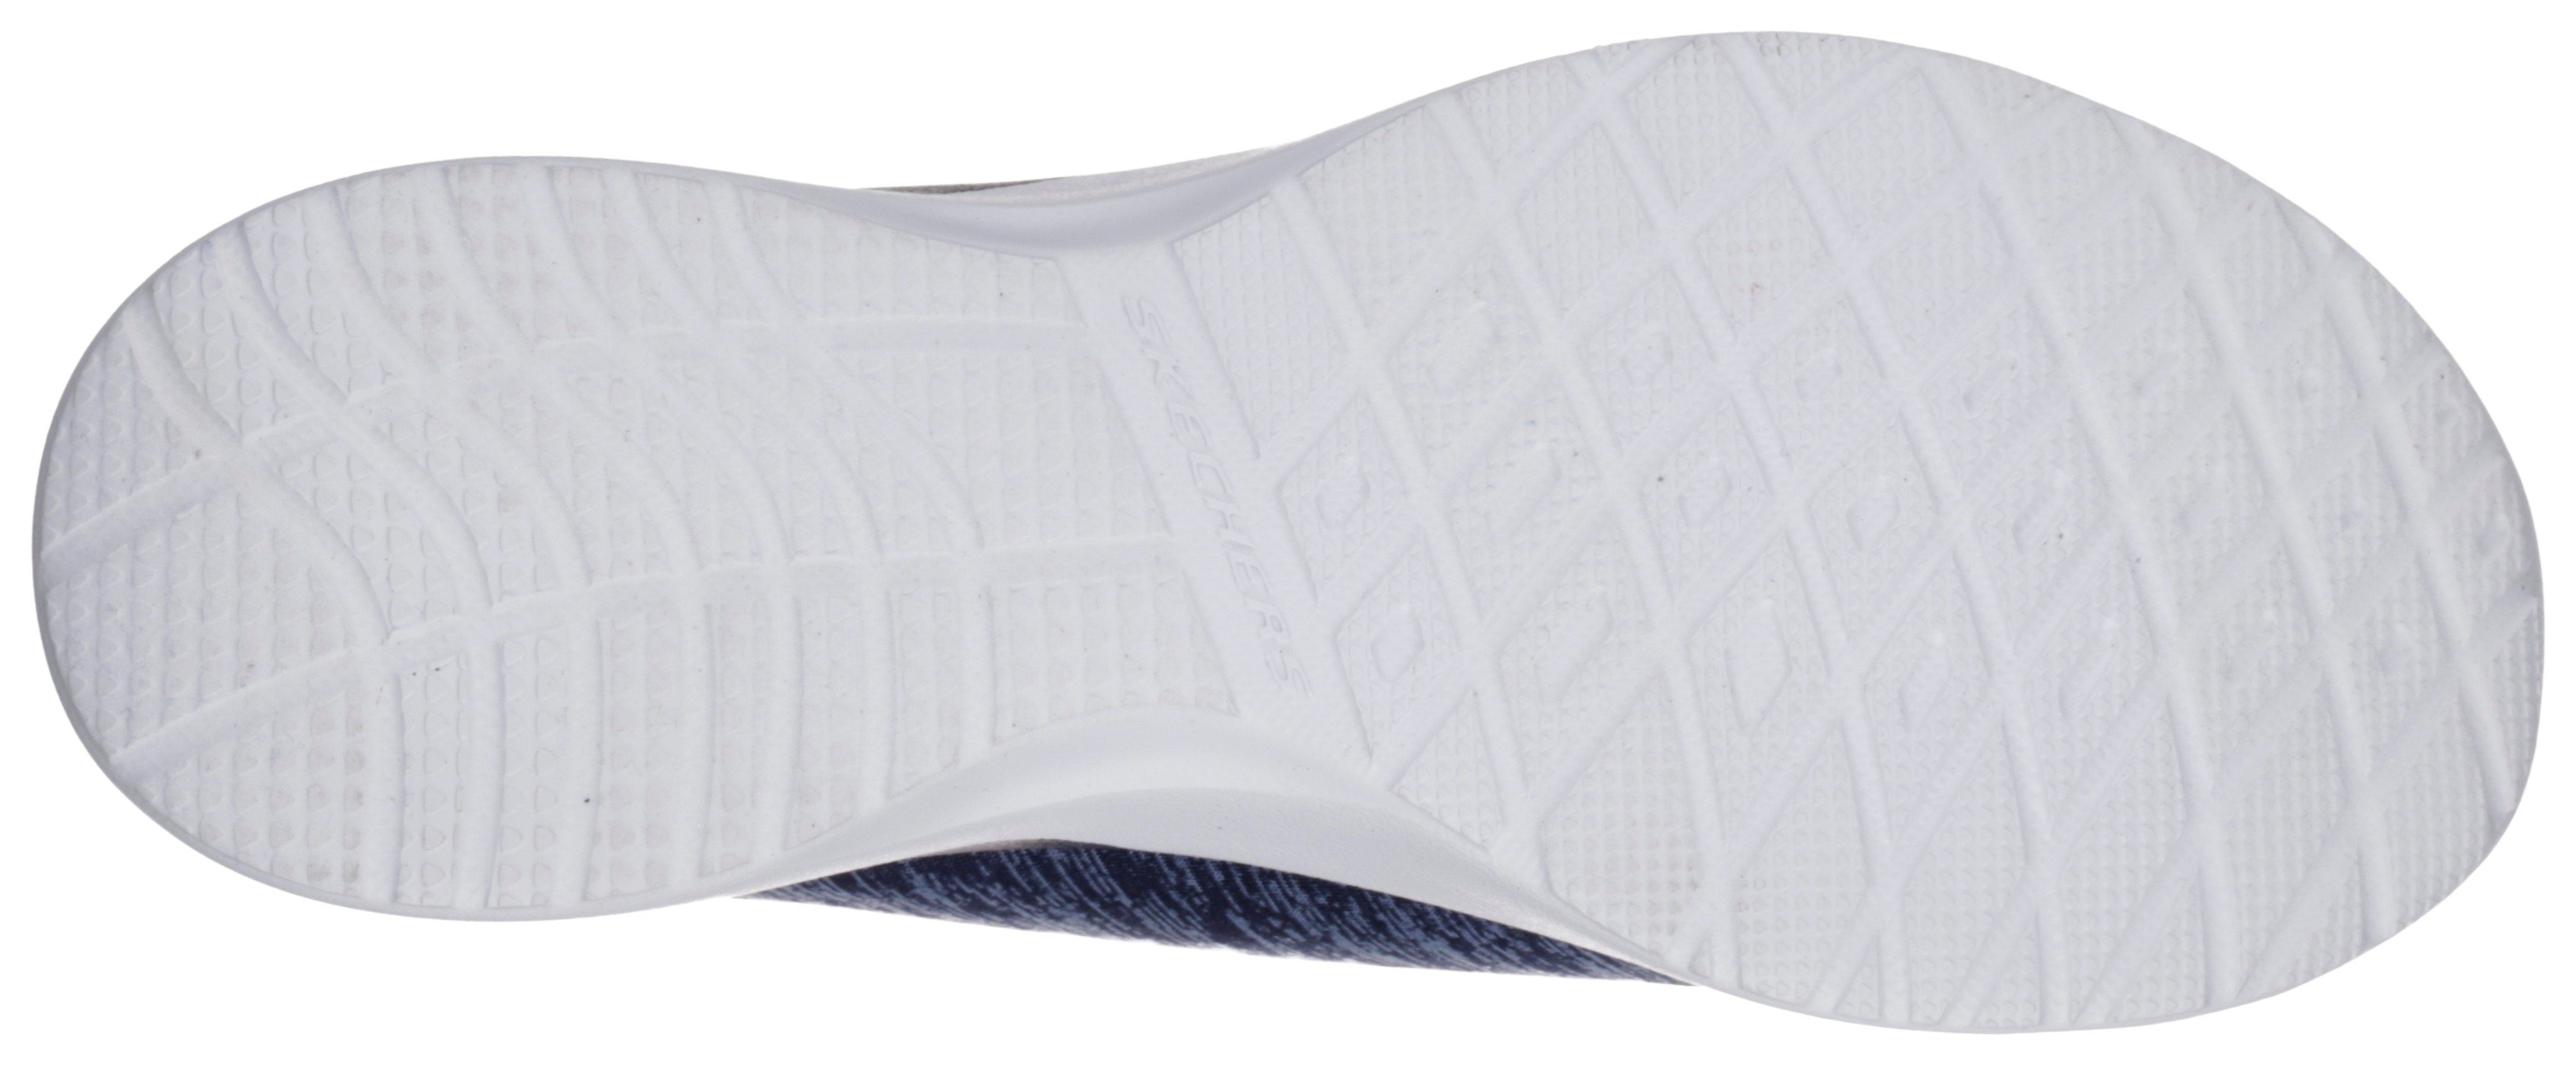 Skechers DYNAMIGHT-BREAK-THROUGH Slip-On meliert Gummizug Sneaker navy-hellblau mit praktischem